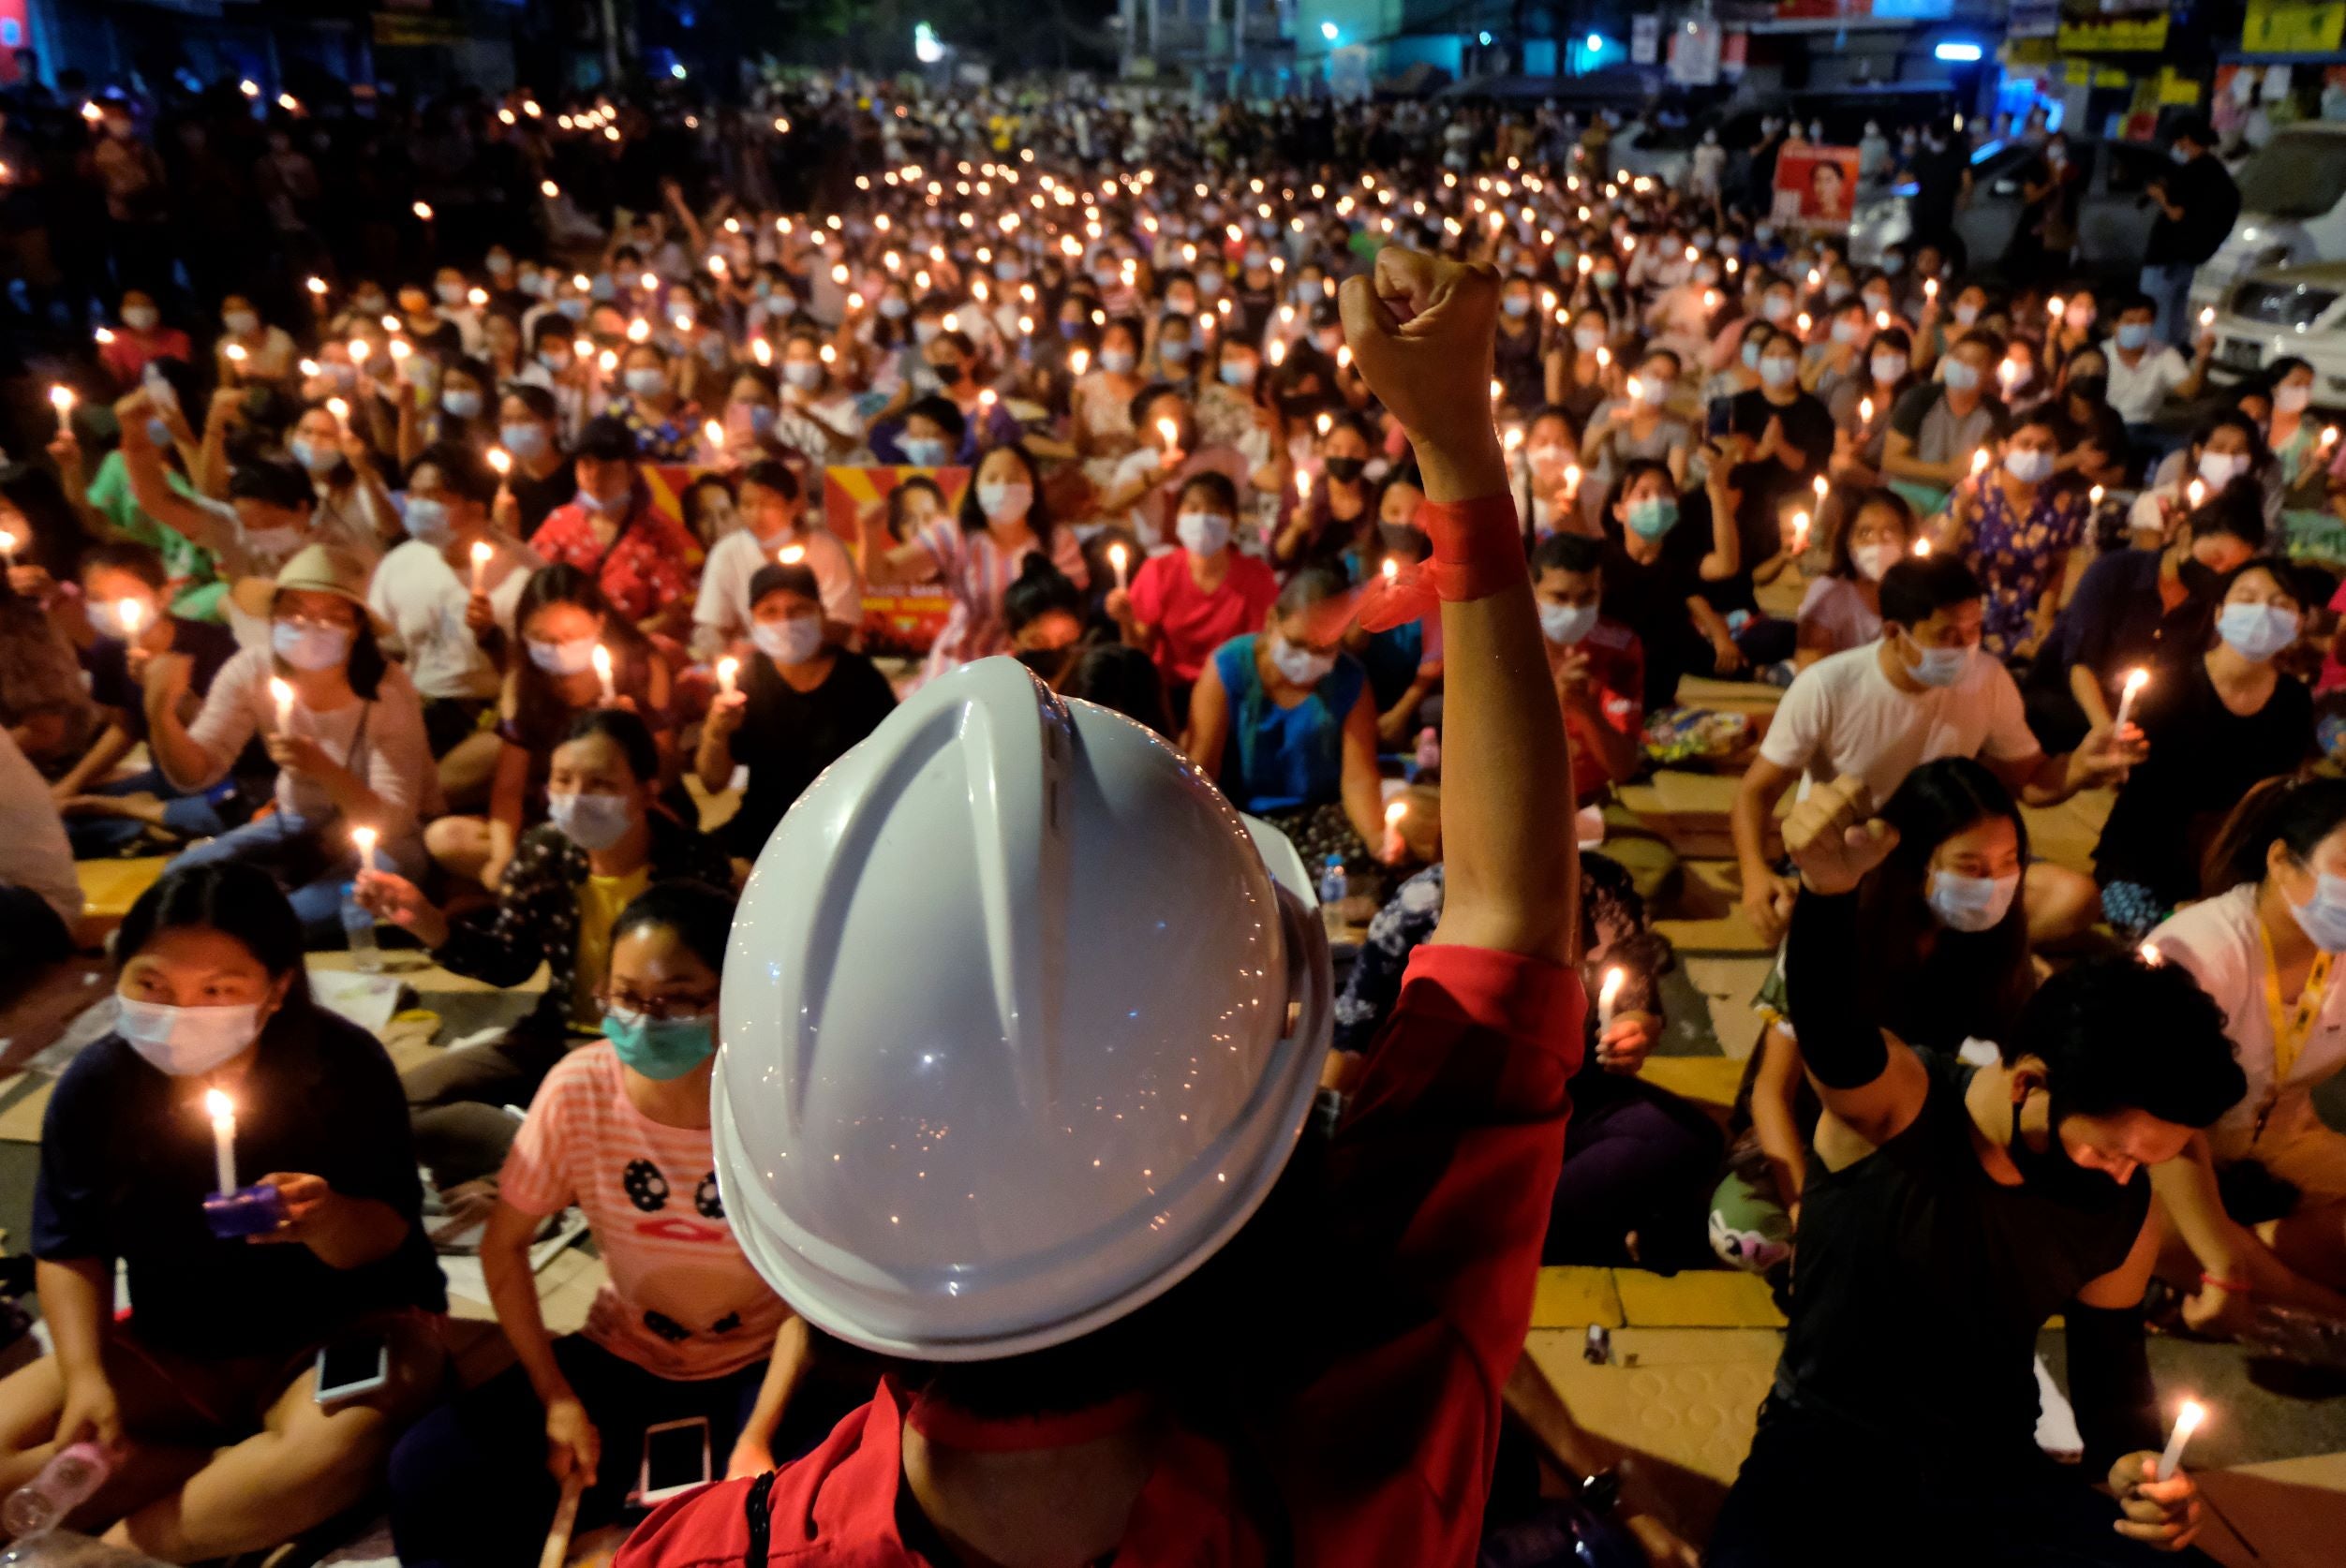 Cette foule de personnes participait à un sit-in à Yangon (Rangoun) au Myanmar, dans la nuit du 14 mars 2021, tenant des bougies pour exprimer pacifiquement leur opposition au coup d’État militaire du 1er février 2021.